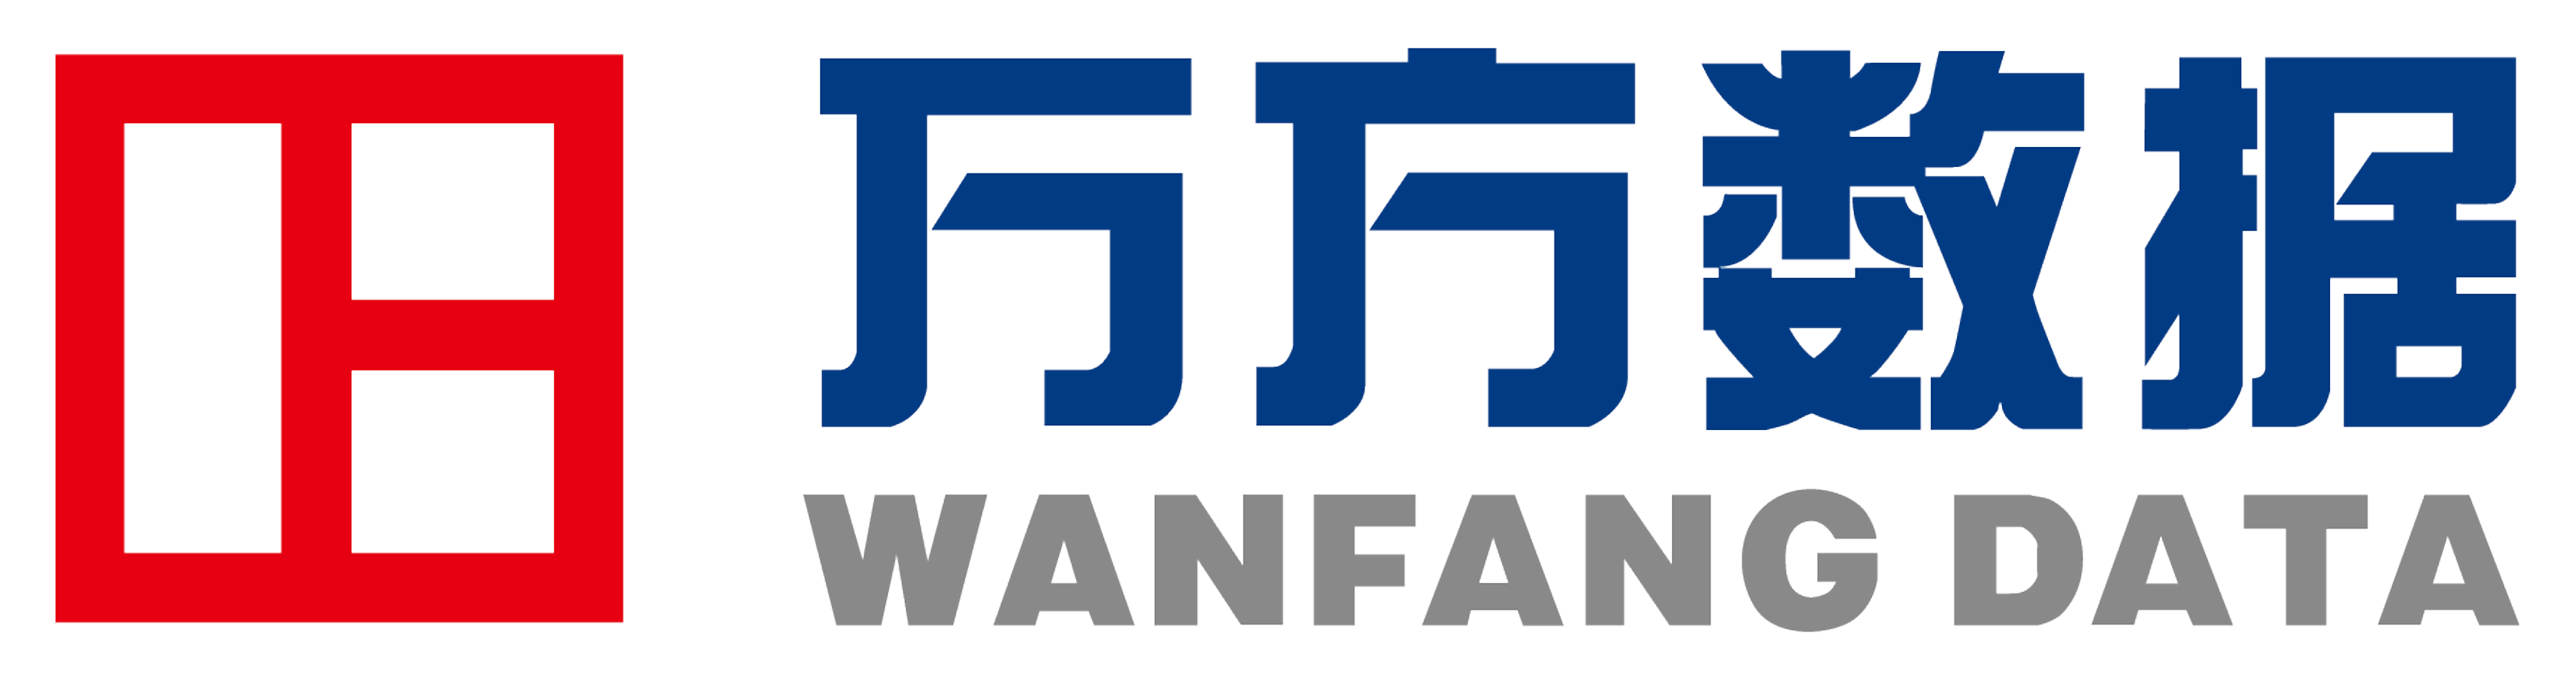 wangfang data logo